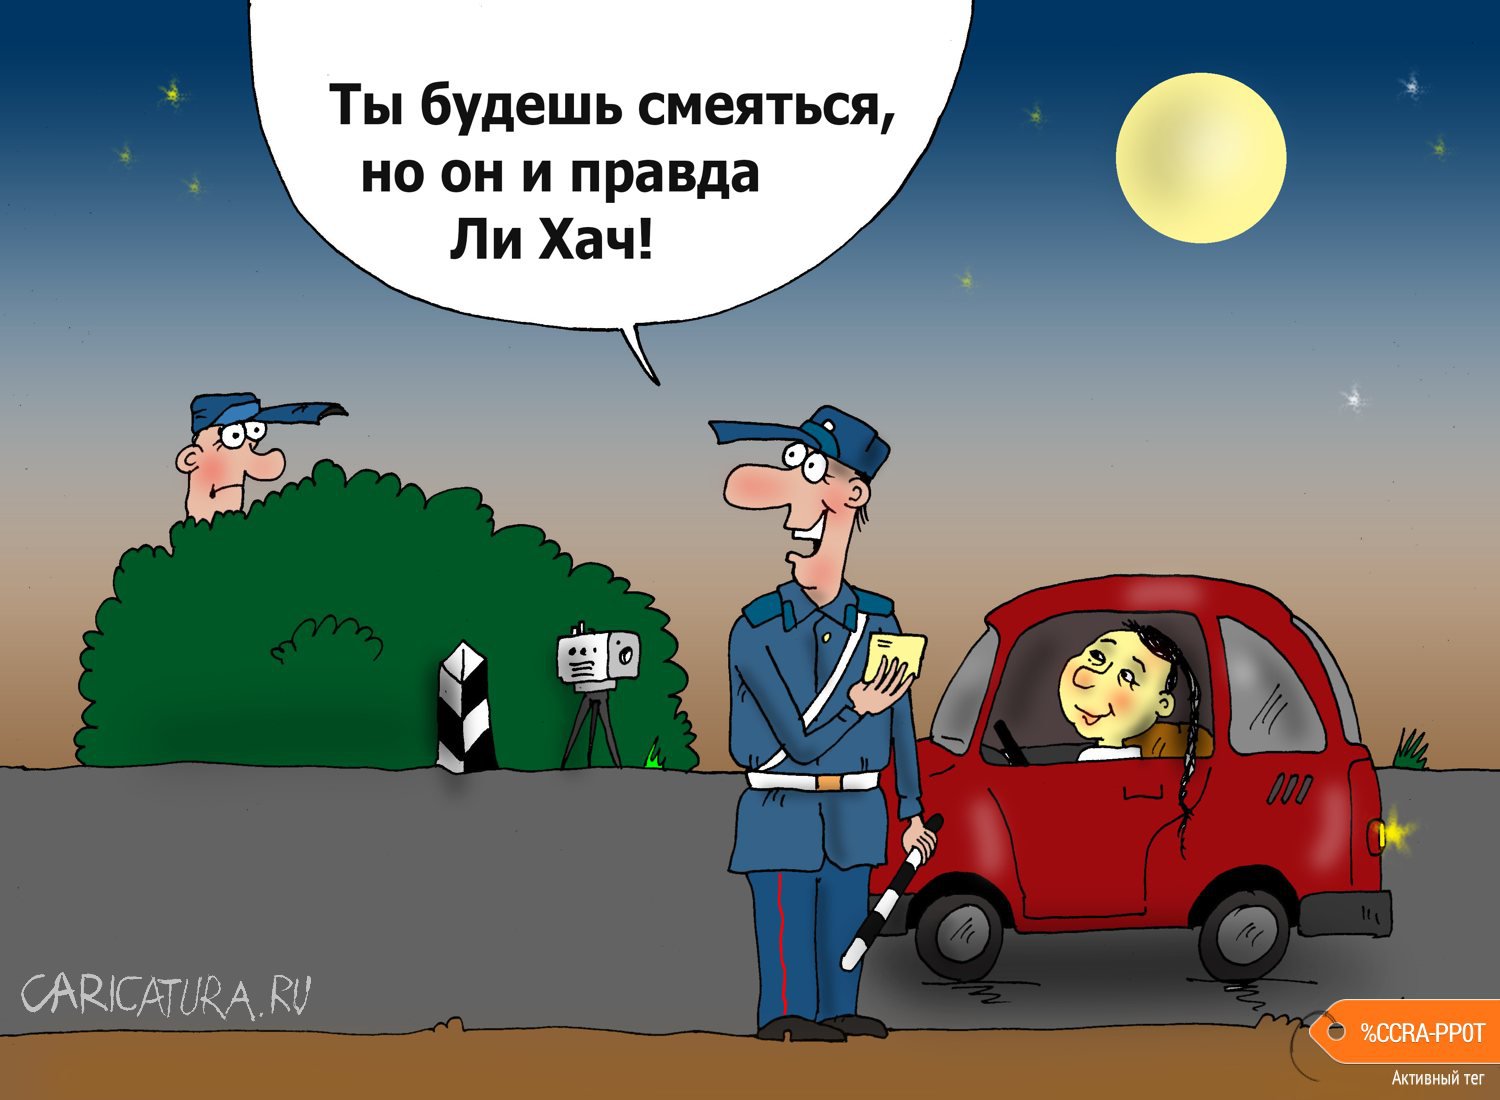 Карикатура "Лихач", Валерий Тарасенко